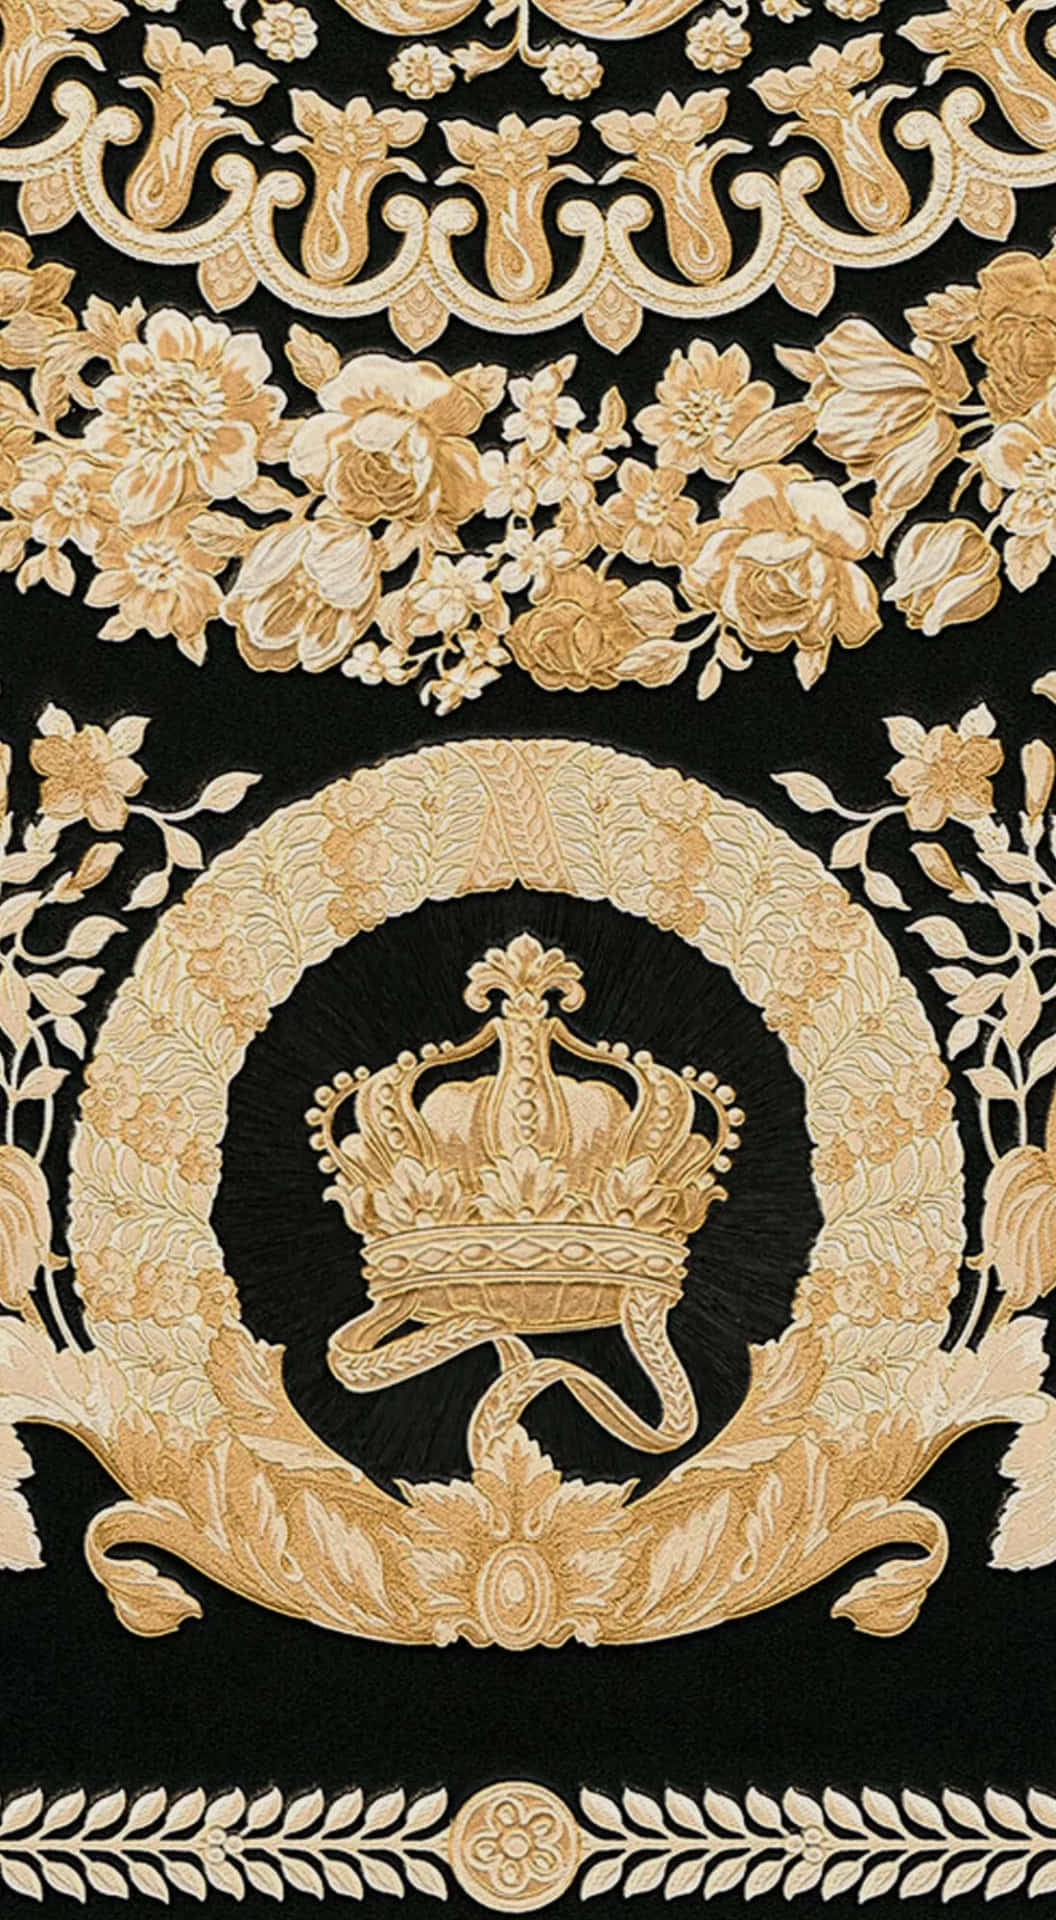 Einschwarz-goldener Teppich Mit Einer Krone Und Kronen. Wallpaper